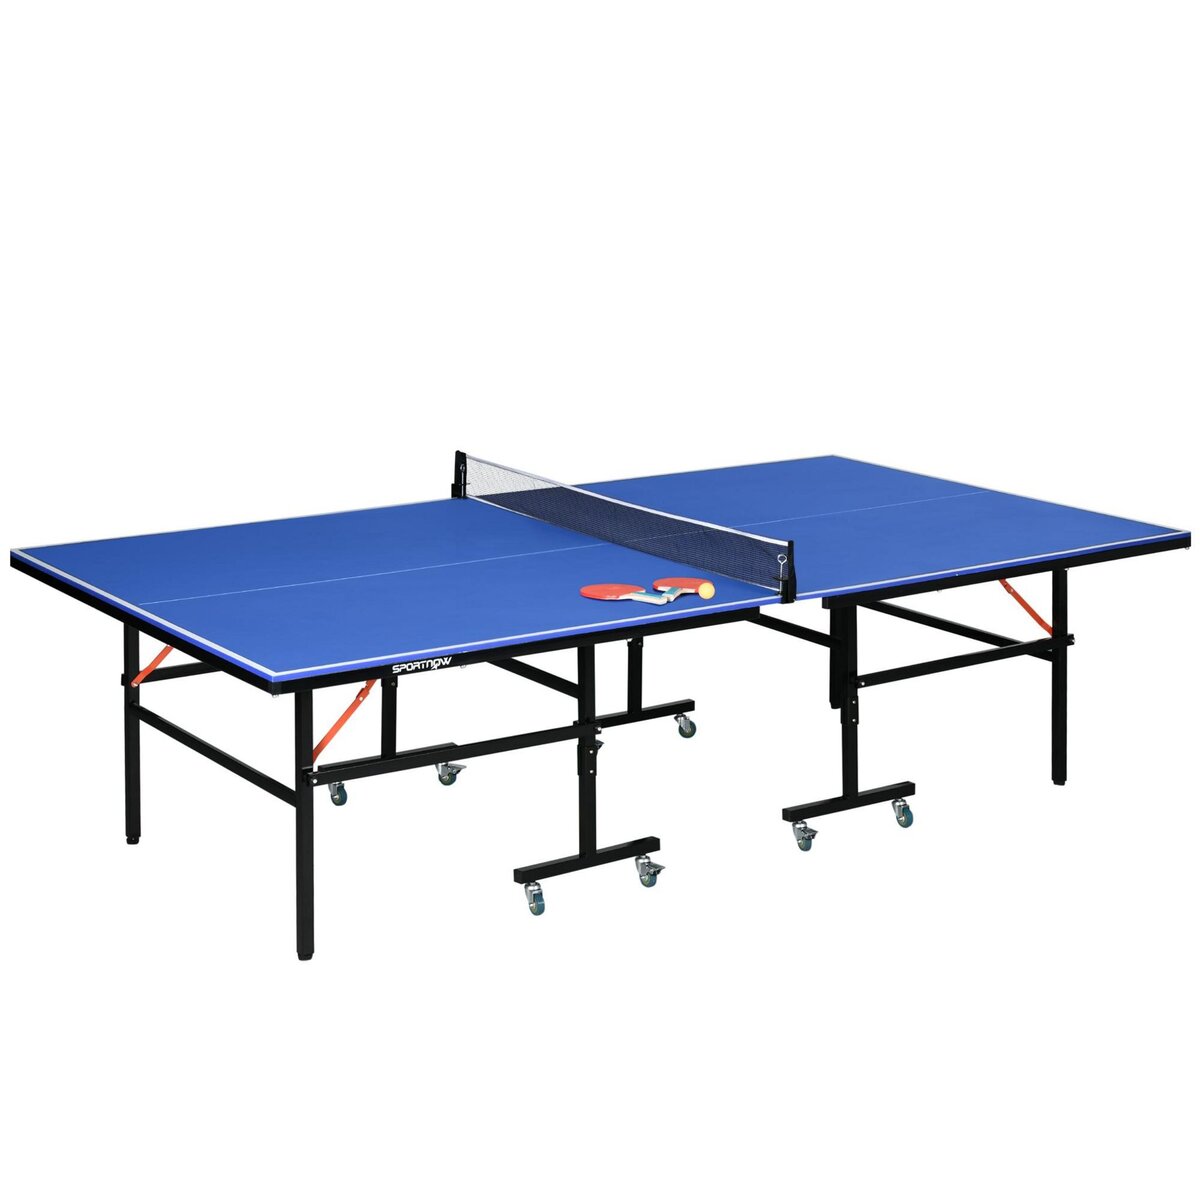 HOMCOM Table de ping pong tennis de table pliable 8 roues - filet, 2 raquettes, 3 balles inclus - noir bleu